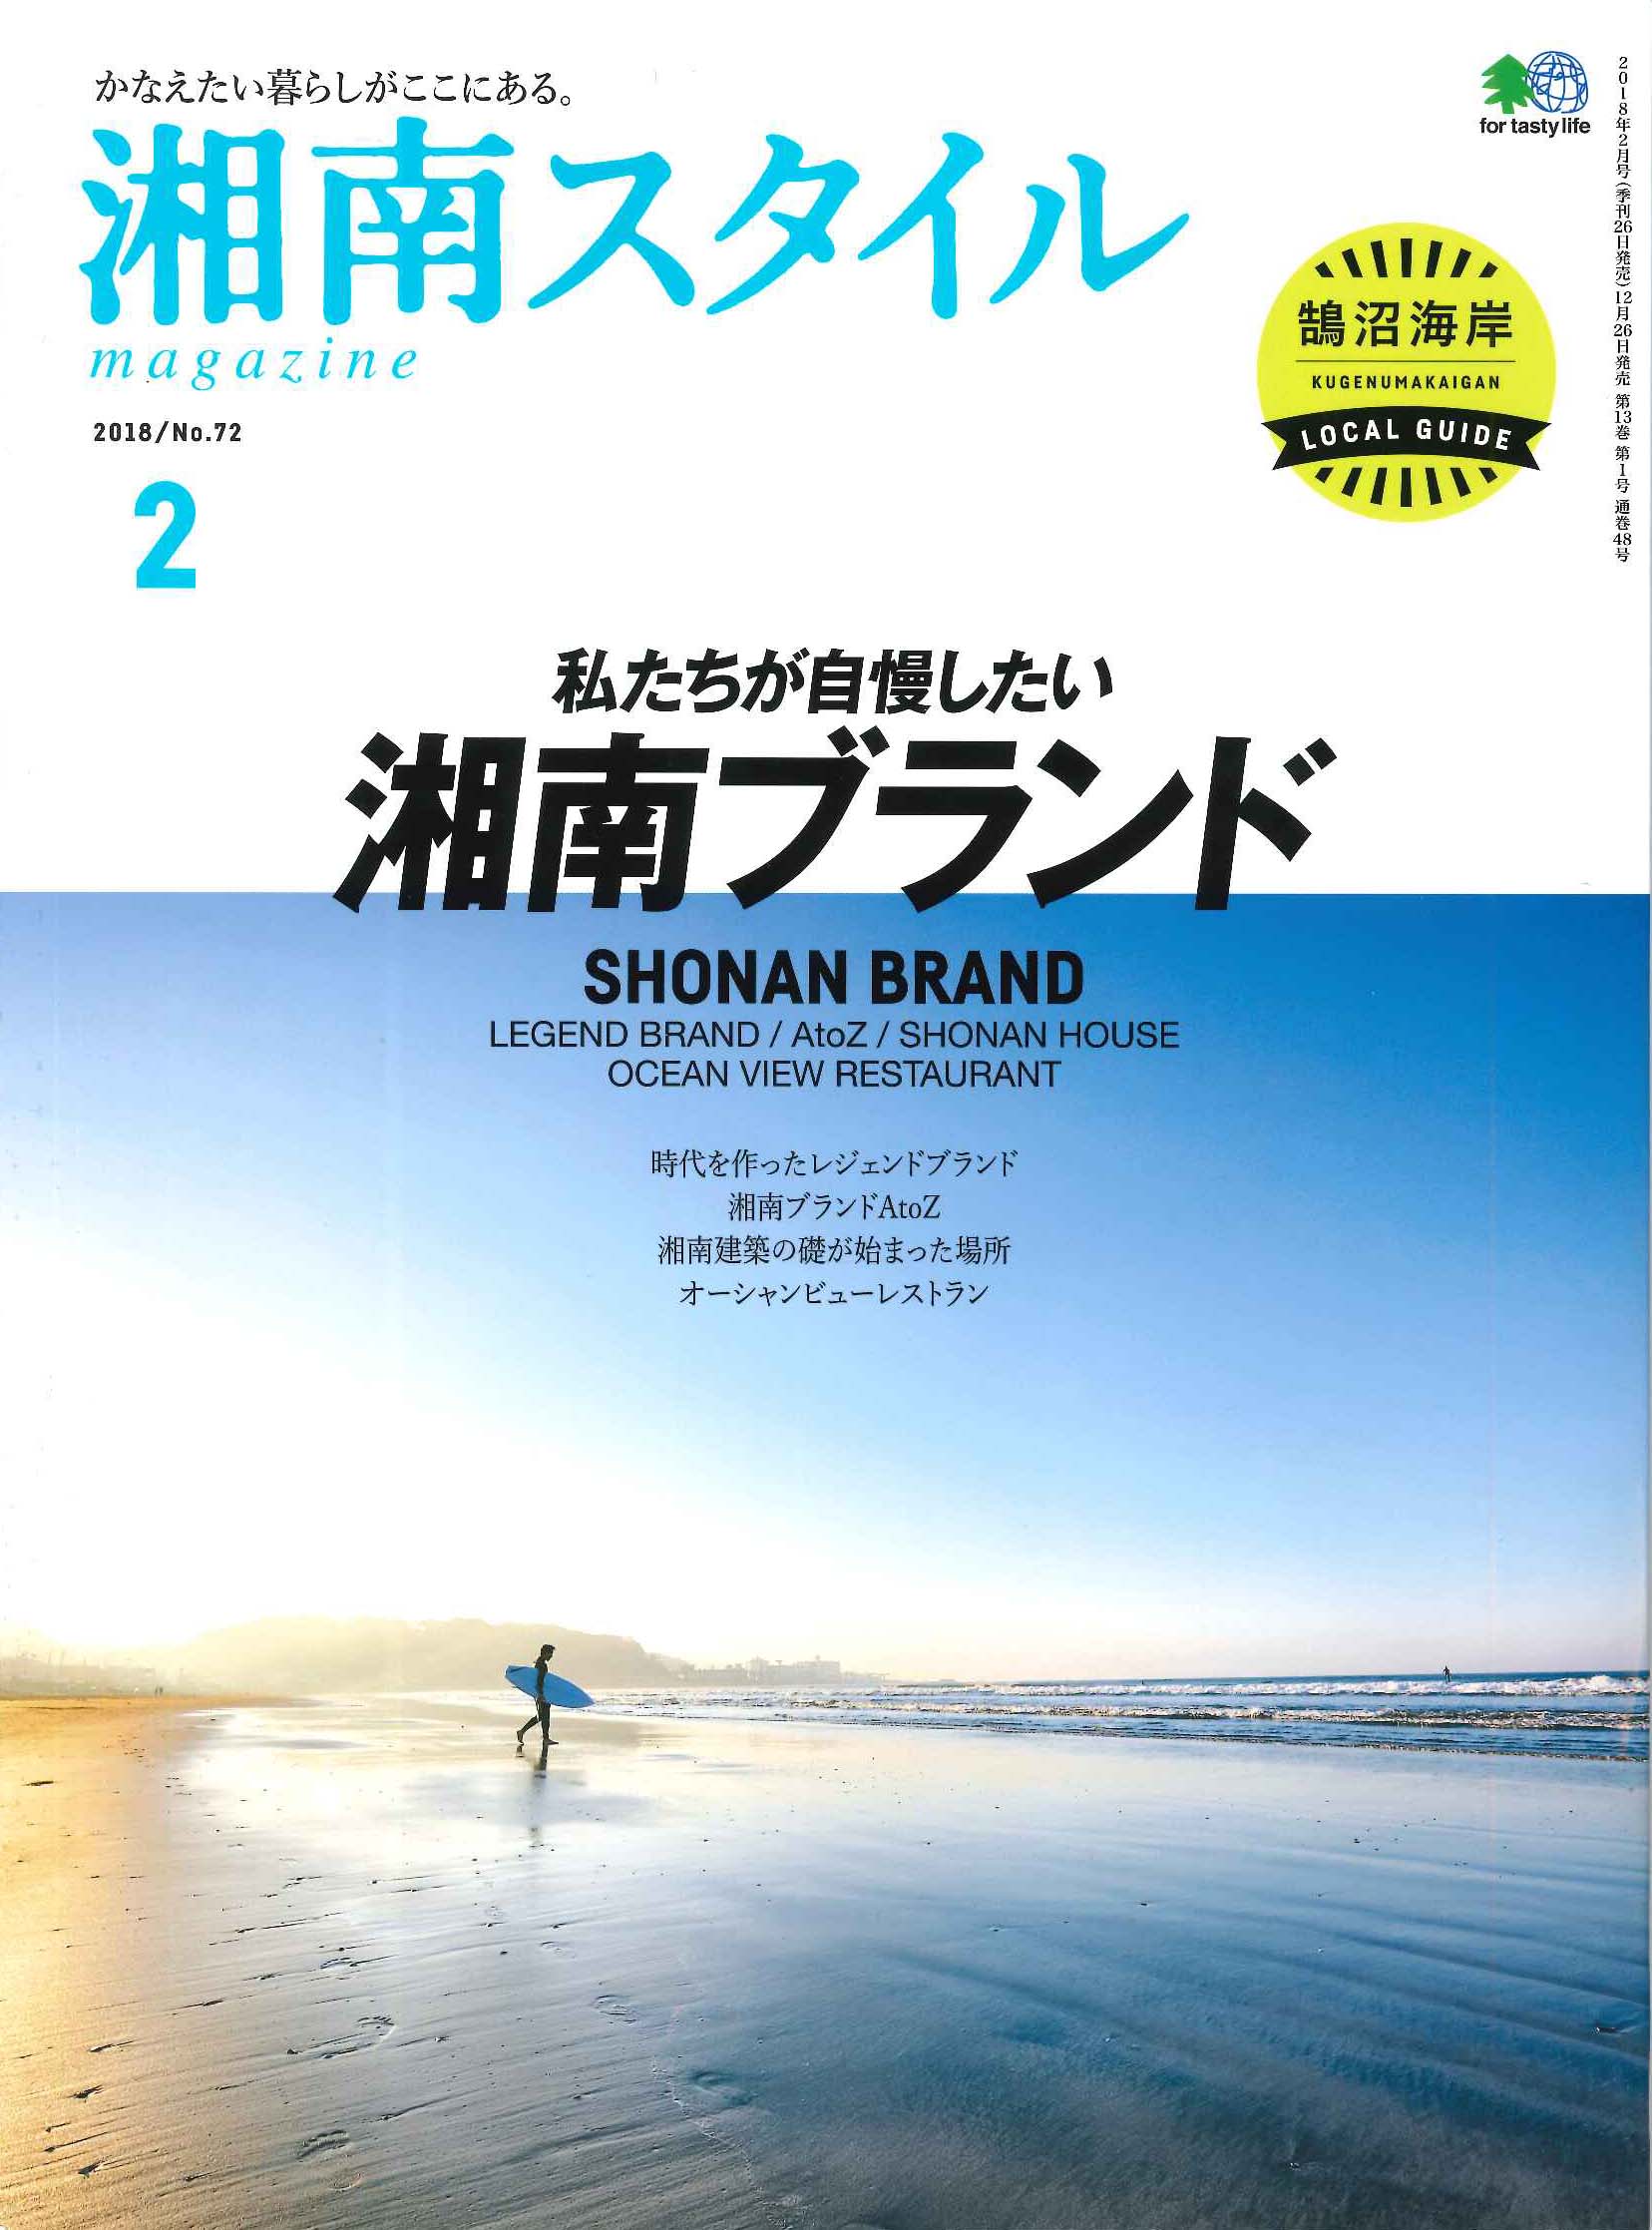 「サンクタスカーサ横須賀ヒルズ」が『湘南スタイル2月号』で紹介されました